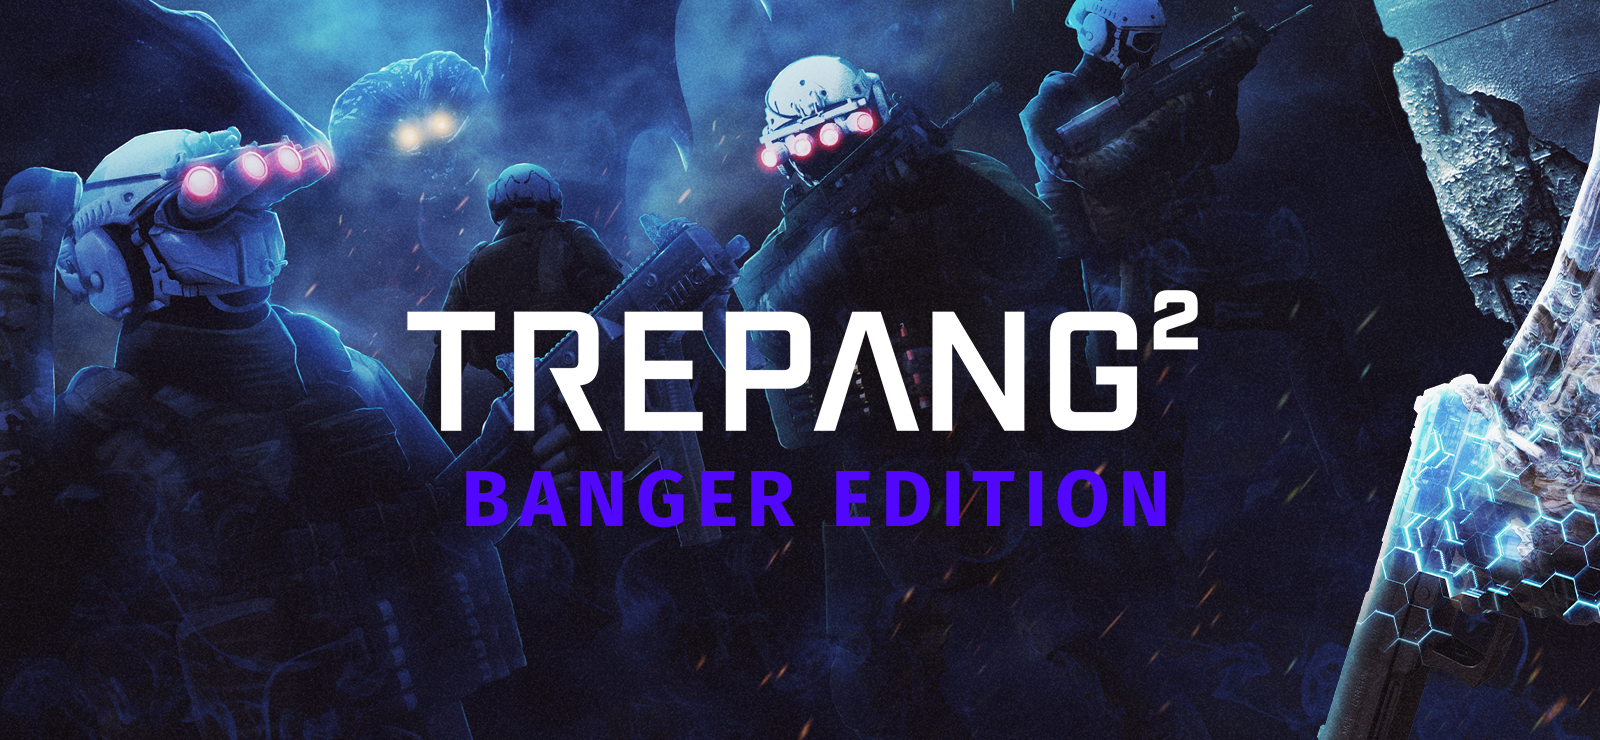 Trepang2 - Banger Edition